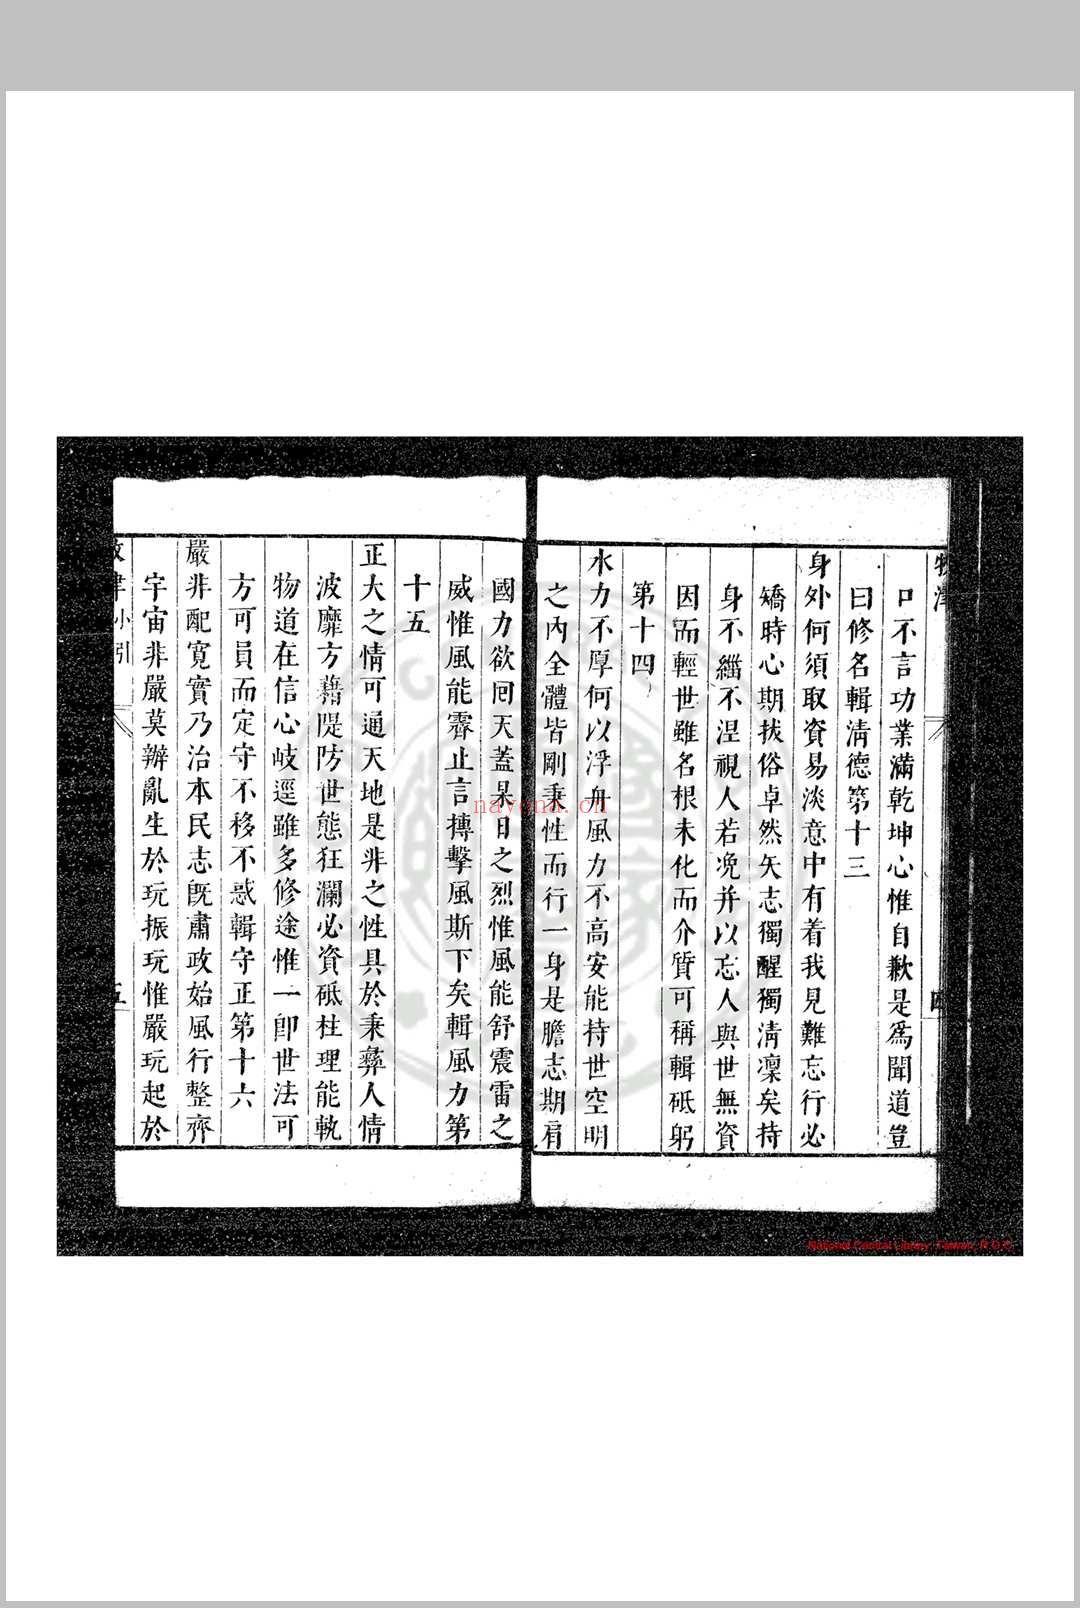 牧津 (明)祁承㸁撰 明天启间(1621-1627)原刊本